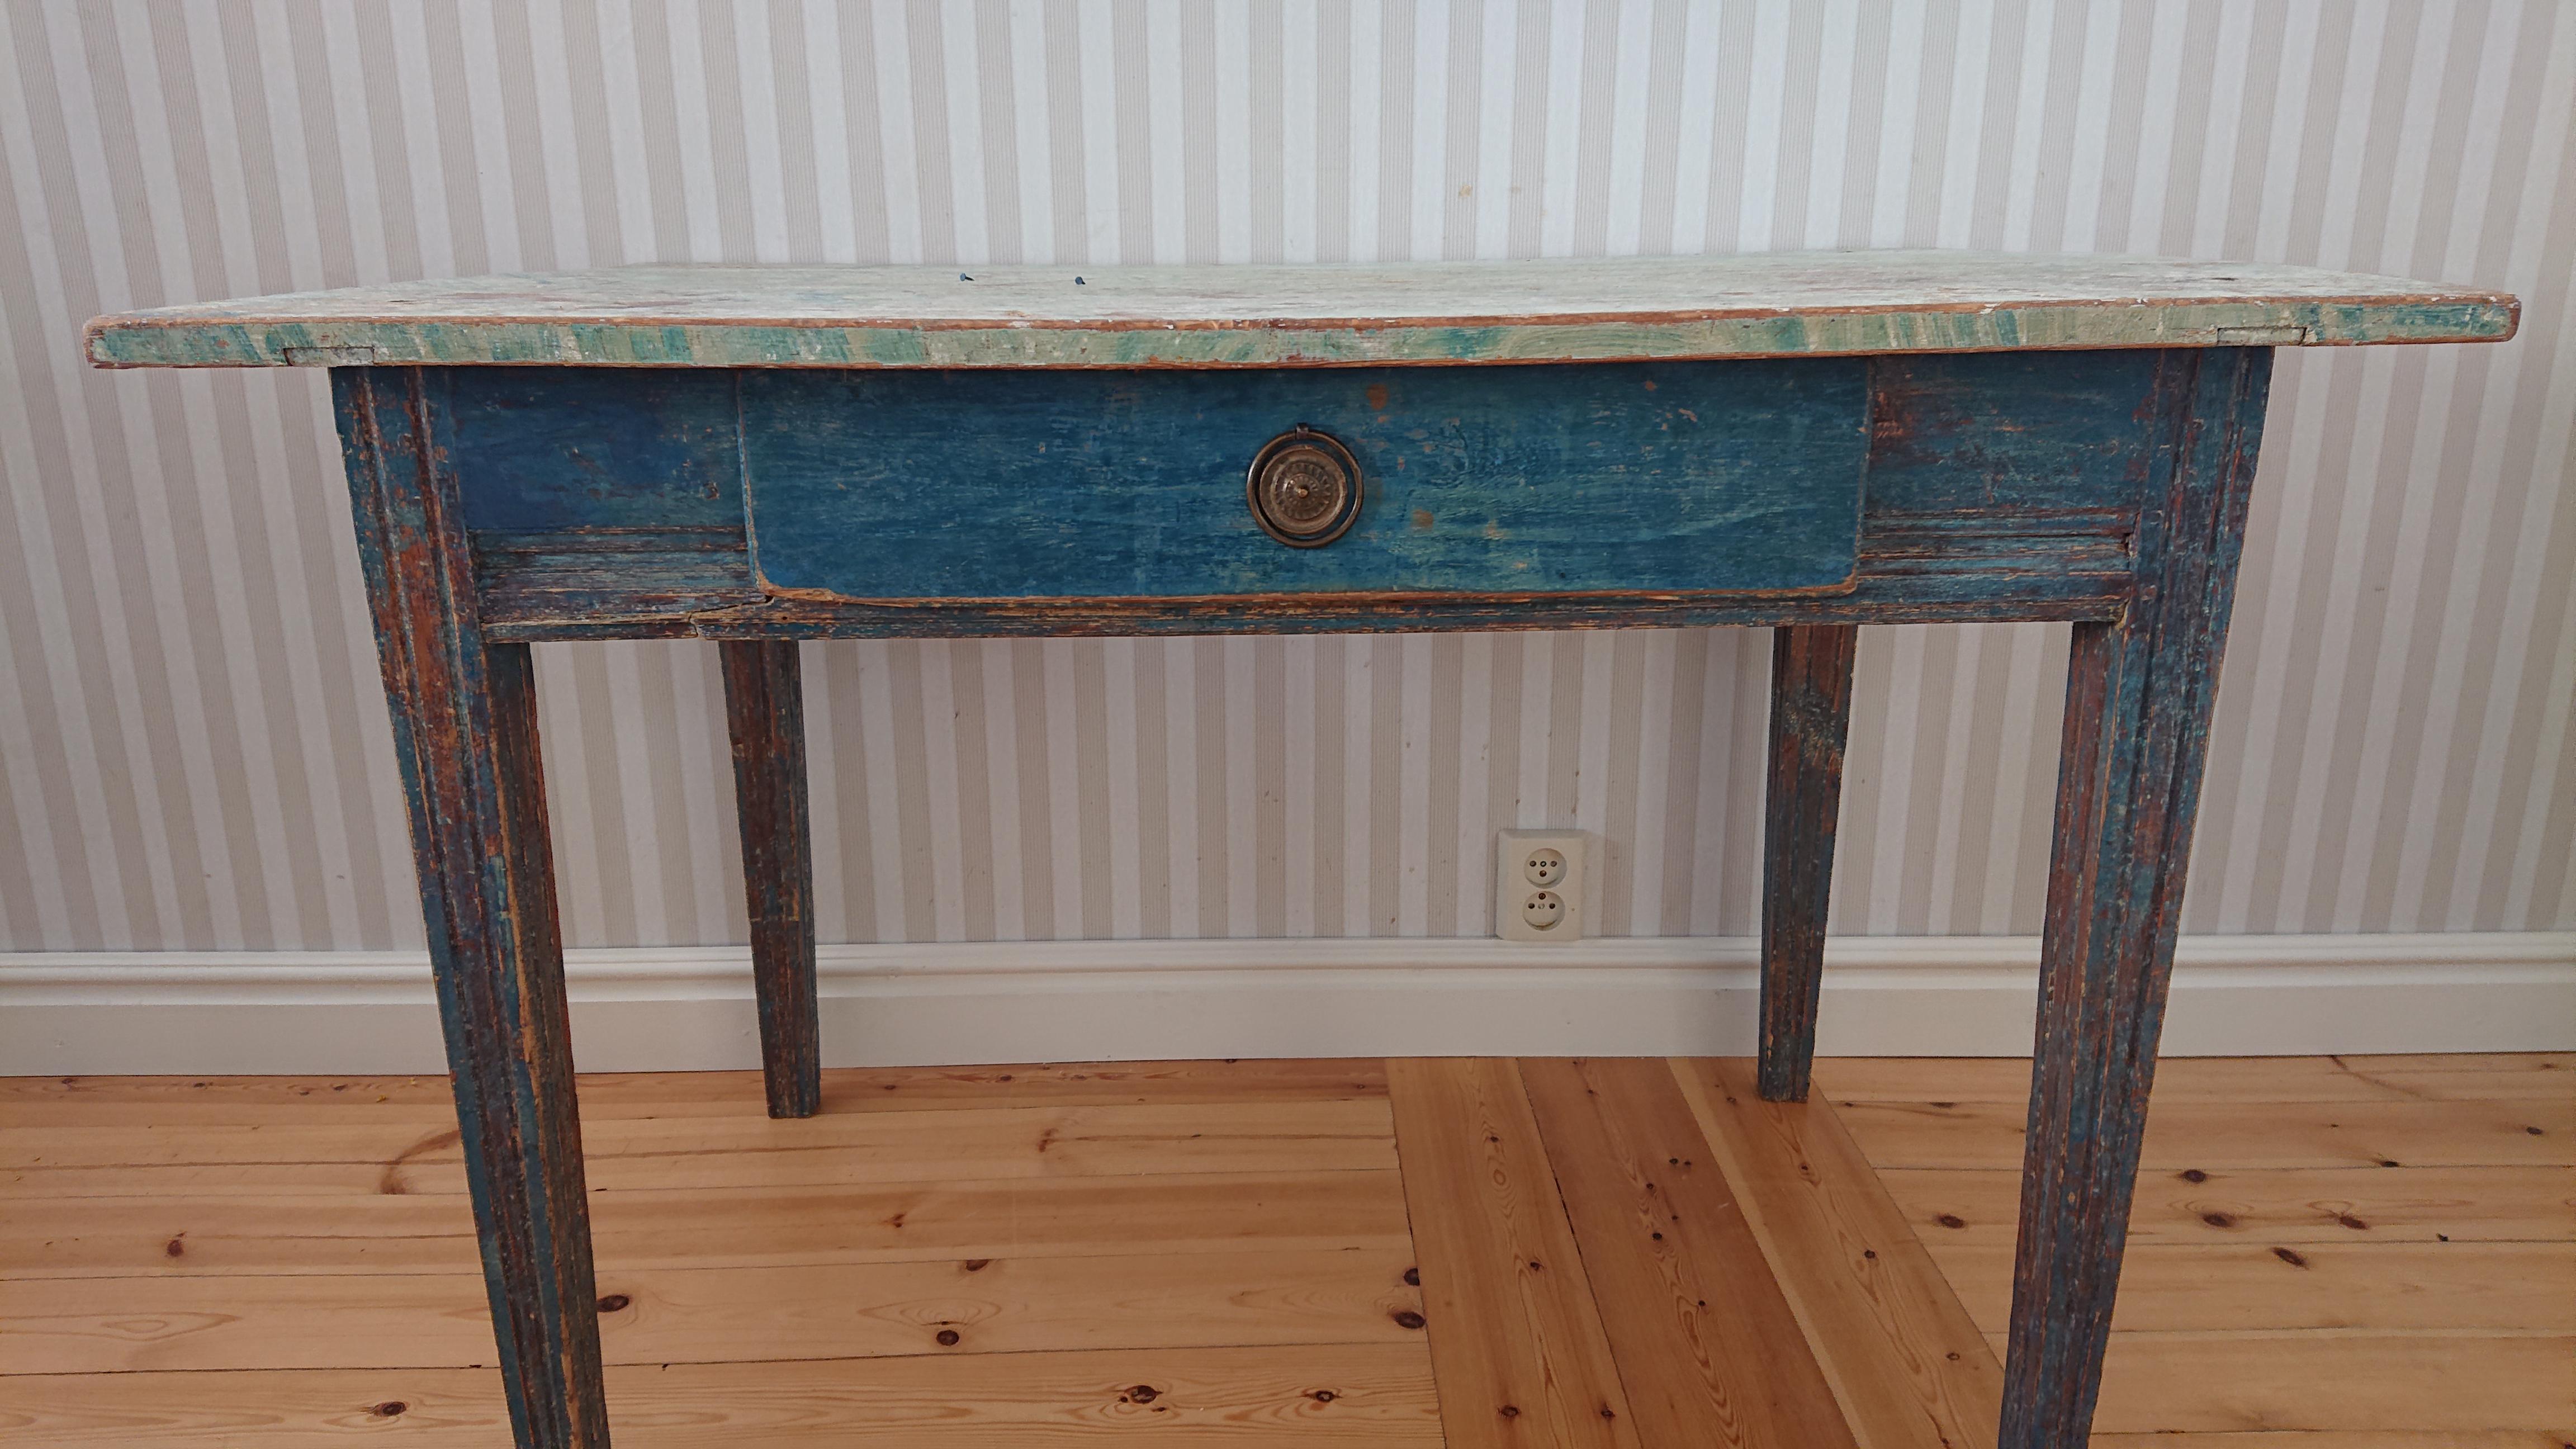 schwedischer Gustavianischer Schreibtisch aus dem 19. Jahrhundert aus Umeå Västerbotten, Nordschweden.
Schöner Gustavianischer Schreibtisch, der bis auf die Originalfarbe abgeschabt wurde.
Der Tisch hat eine schöne blaue Farbe.
Beine mit